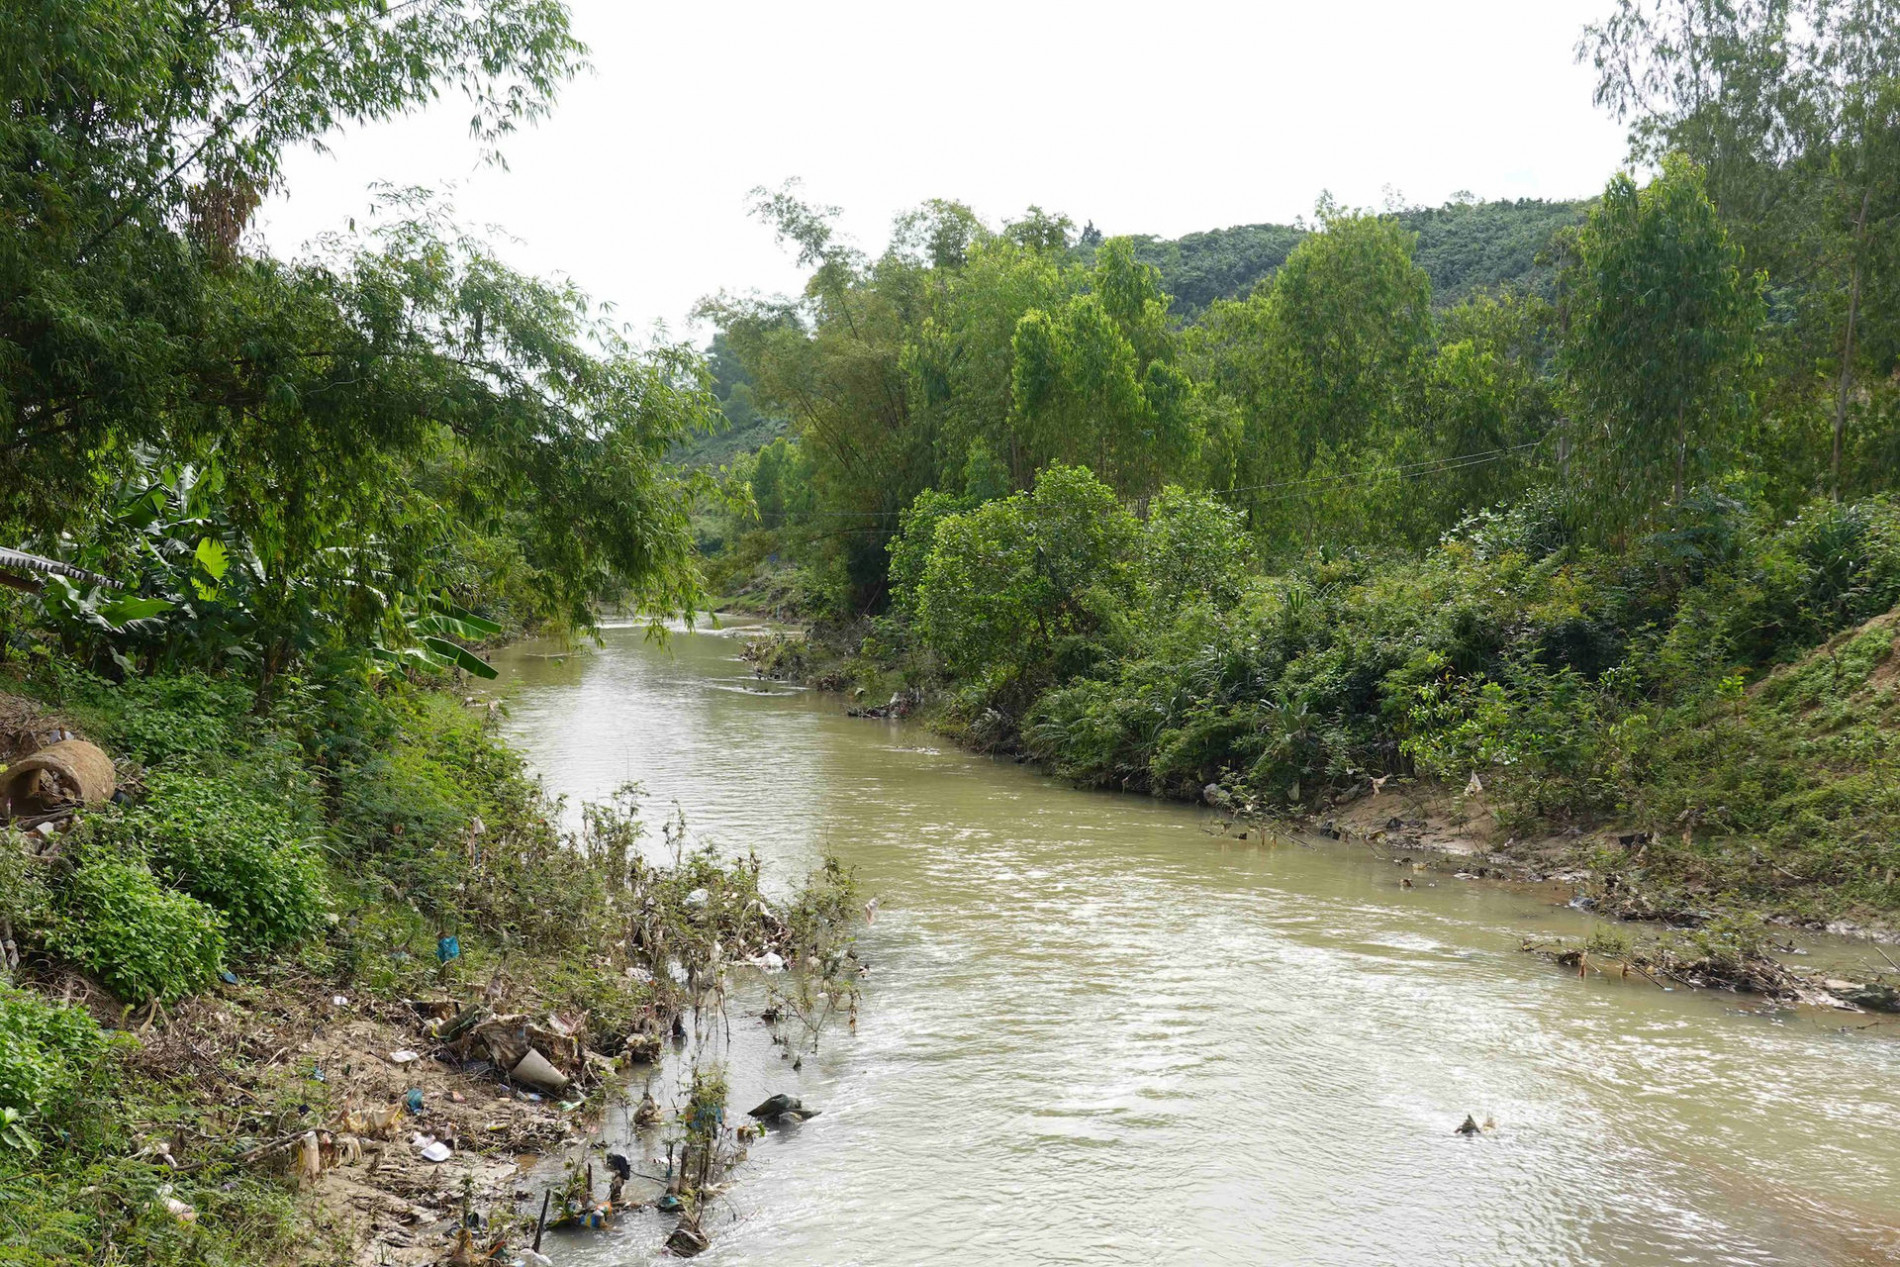 Bình Định: Nhà máy nước 20 tỷ đồng “đắp chiếu” 3 năm không hoạt động